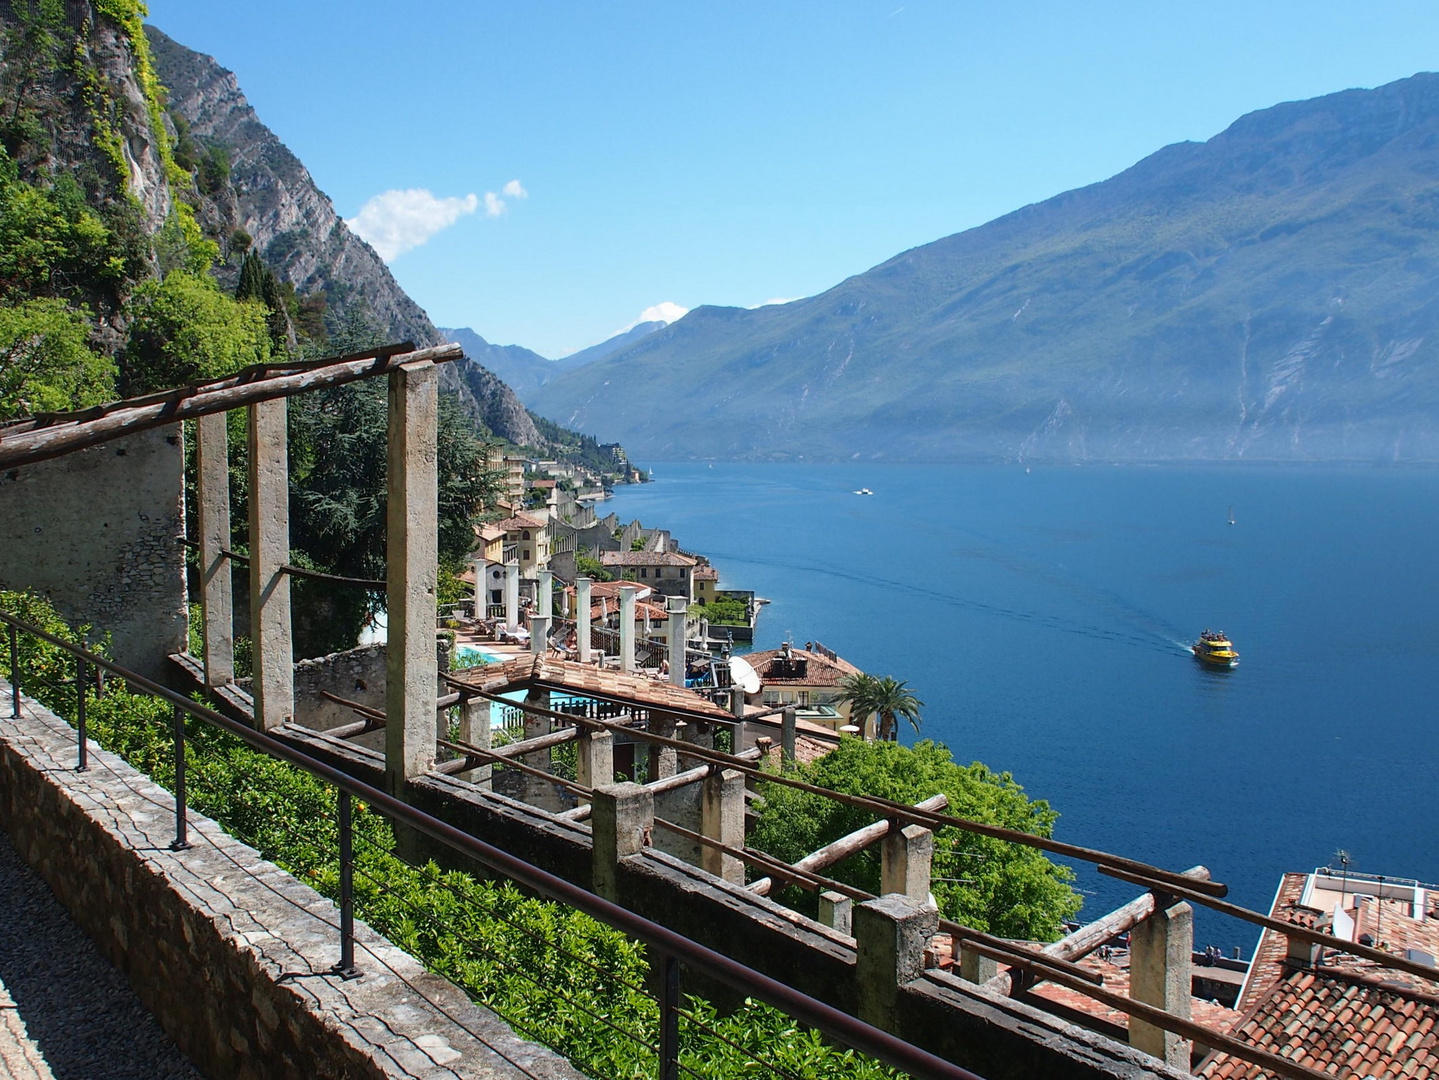 Blick auf den Lago di Garda